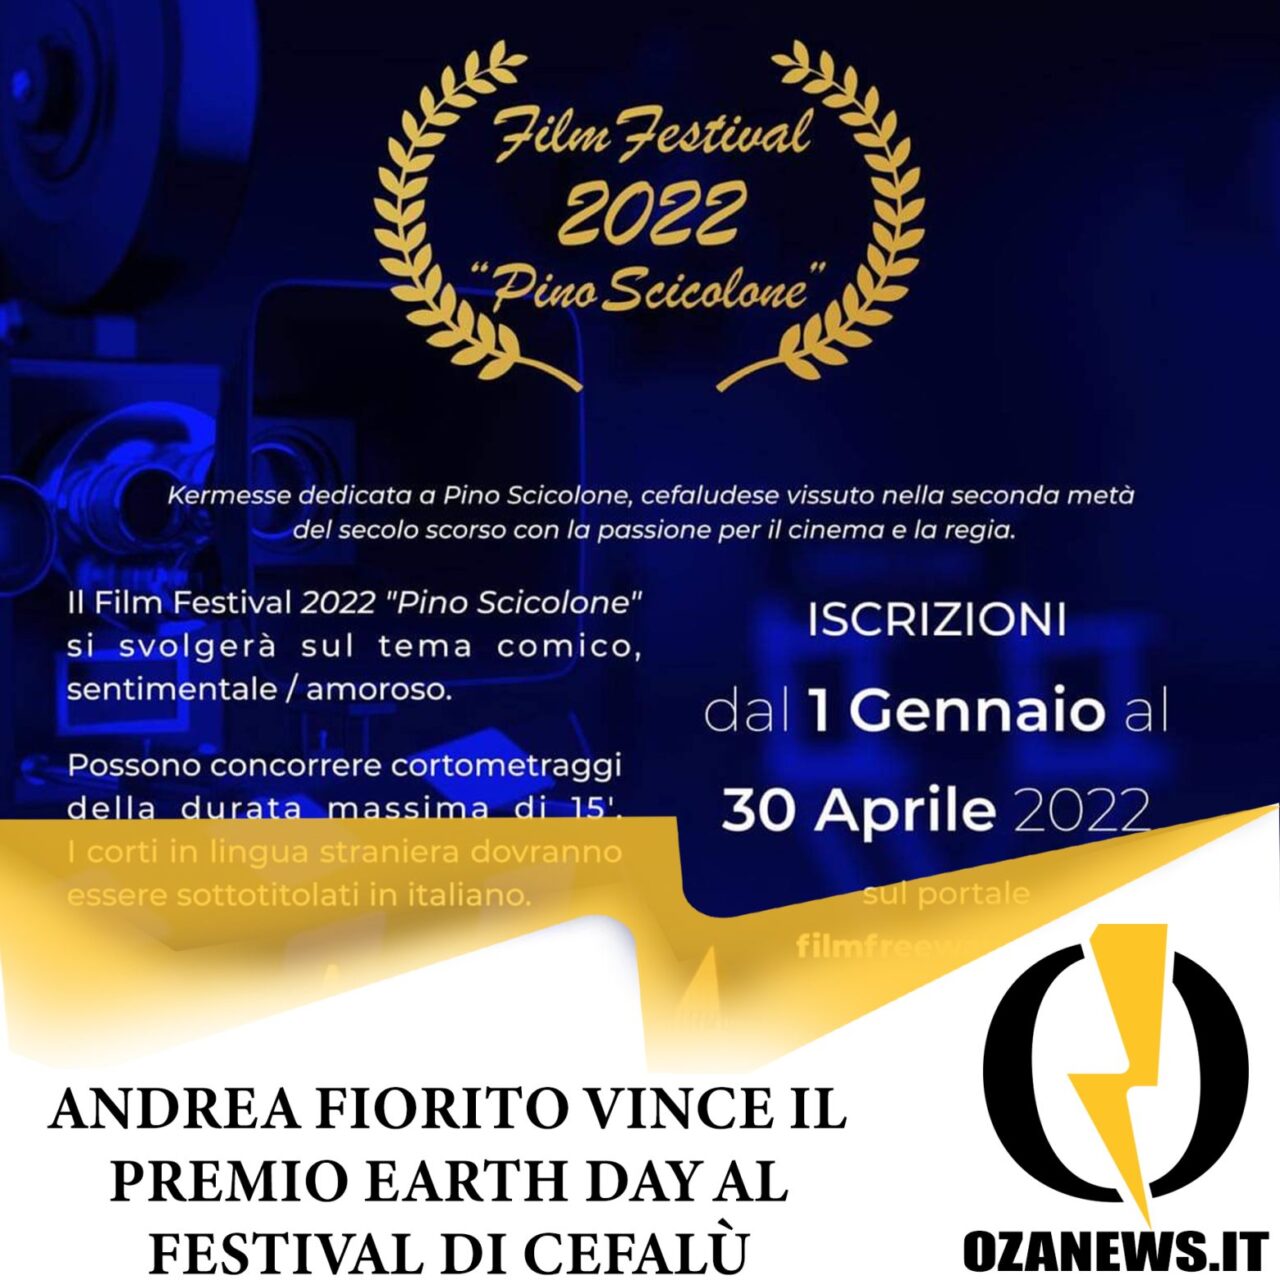 Andrea Fiorito vince il premio Earth Day al festival di Cefalù